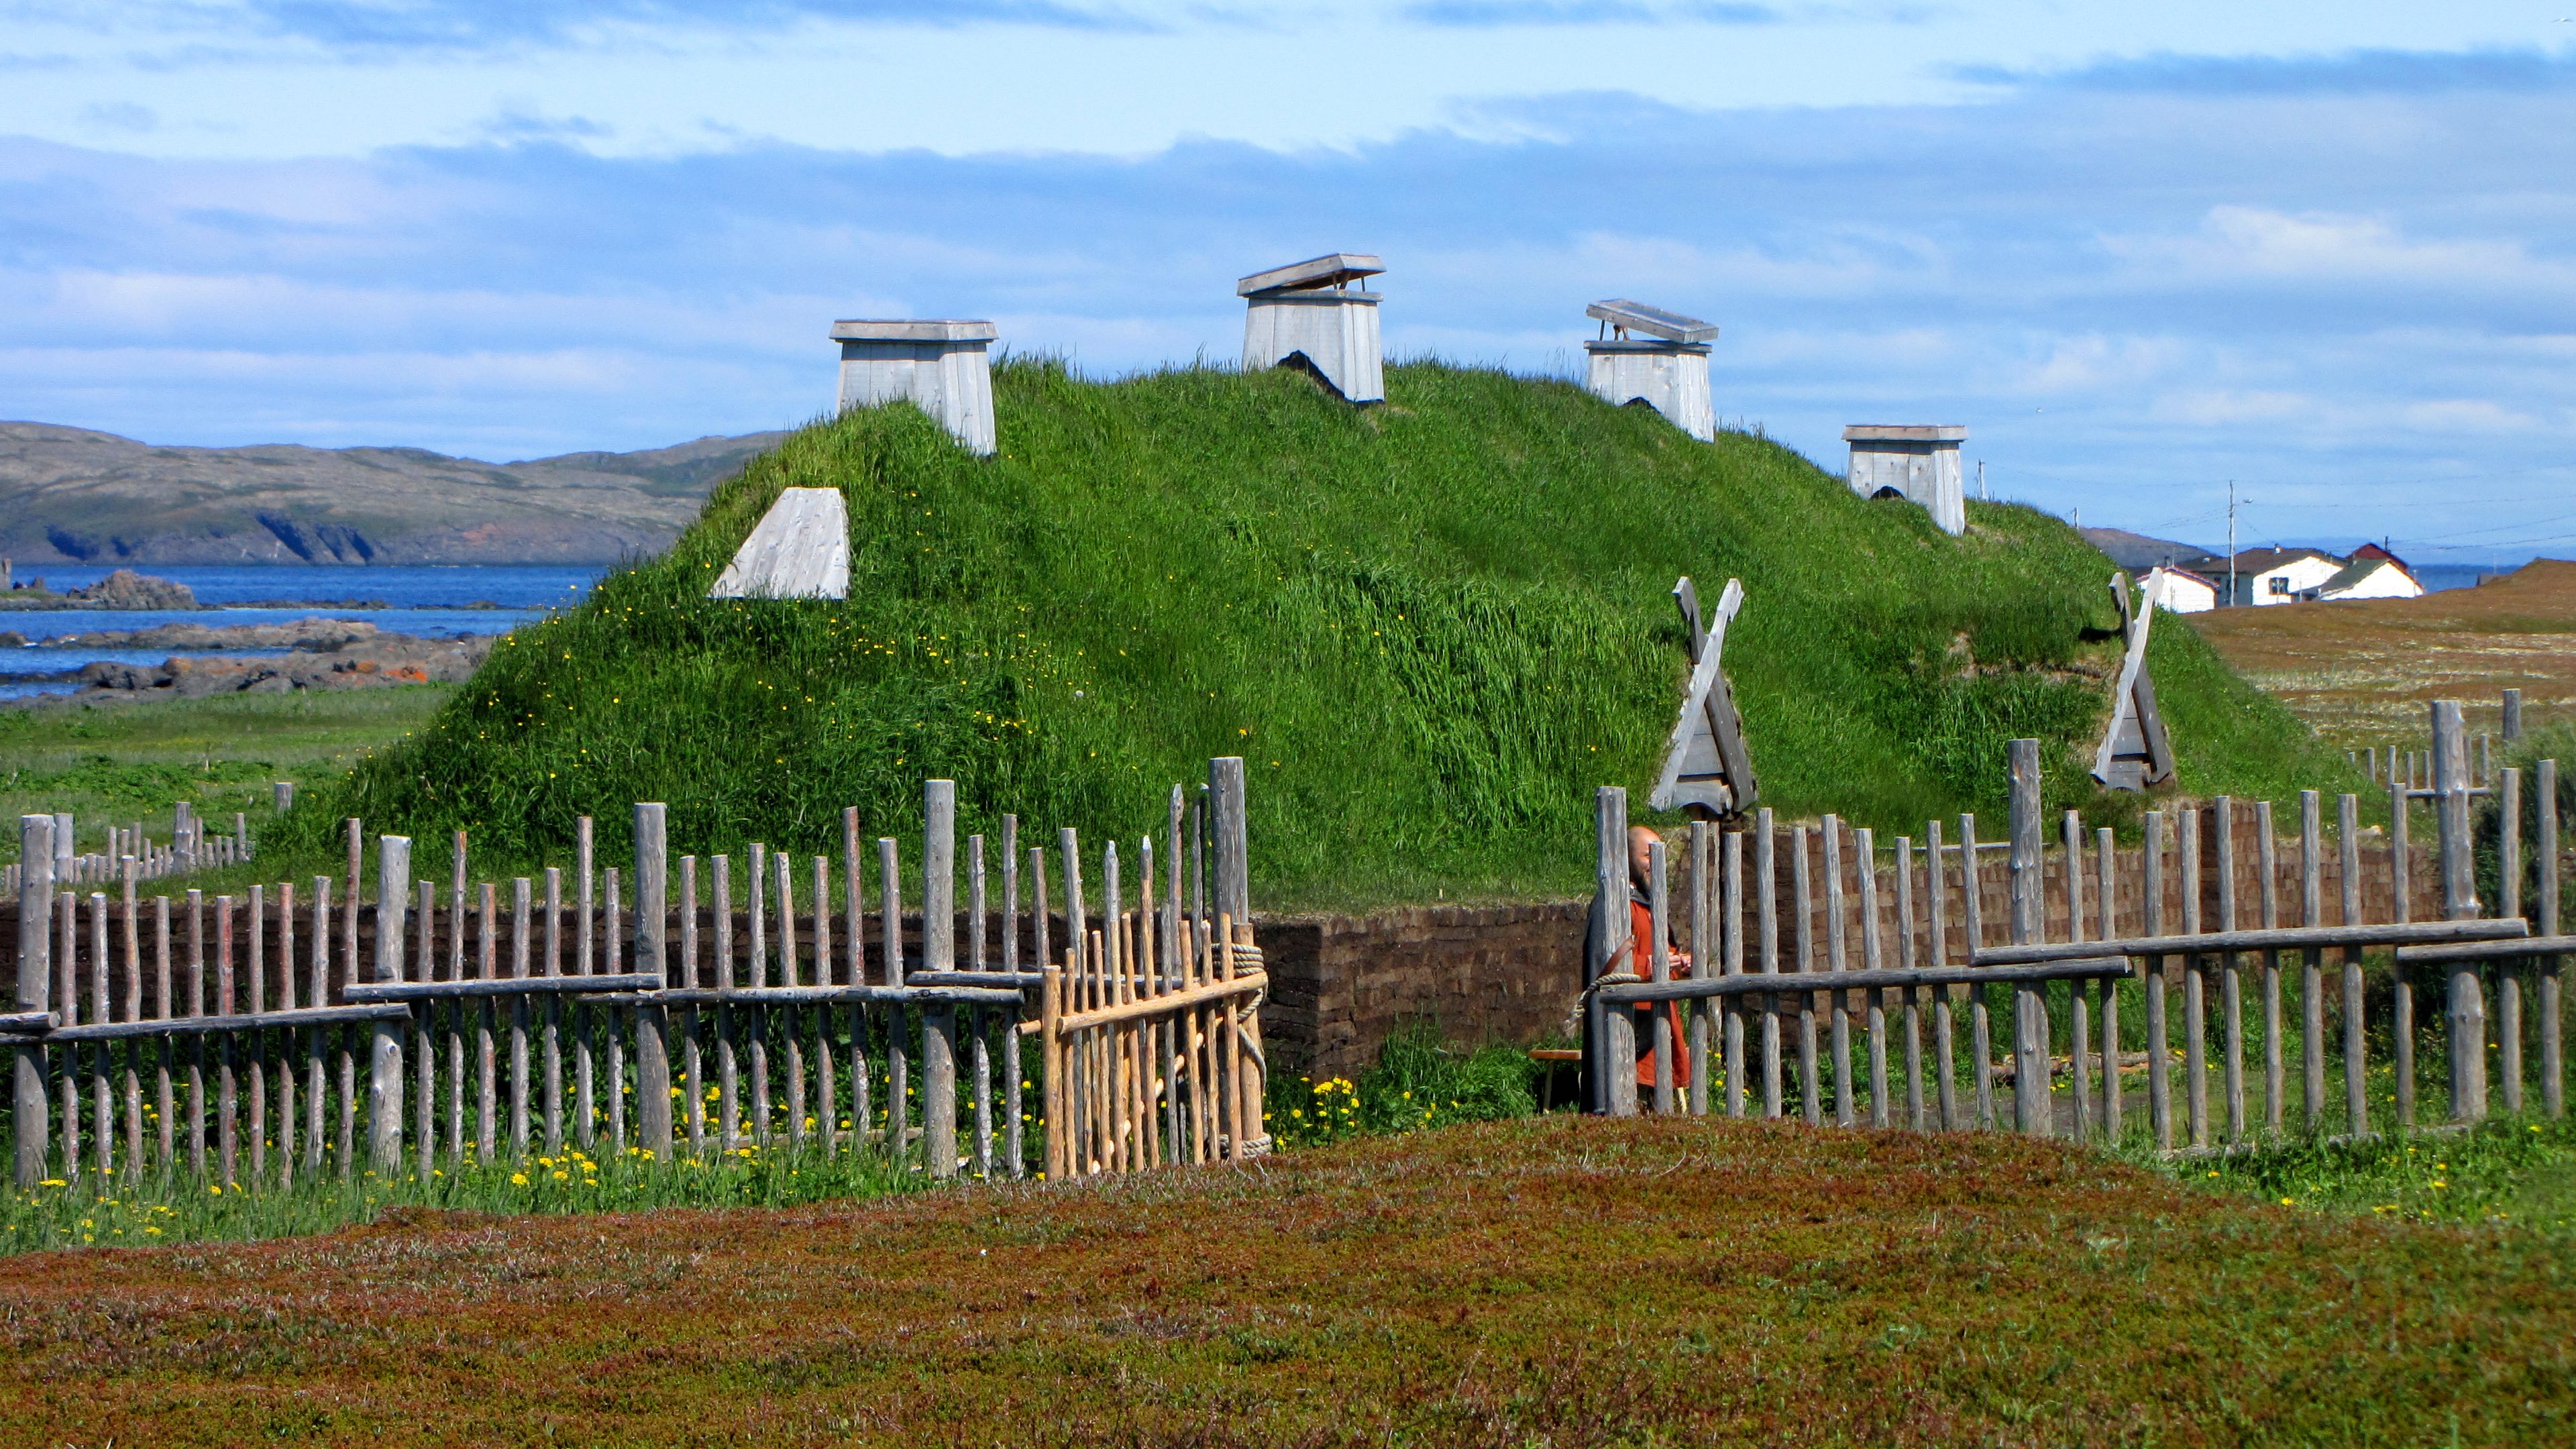 Norse long house recreation, LAnse aux Meadows, Newfoundland and Labrador, Canada. (Courtesy Wikipedia/D. Gorgon E. Robertson)